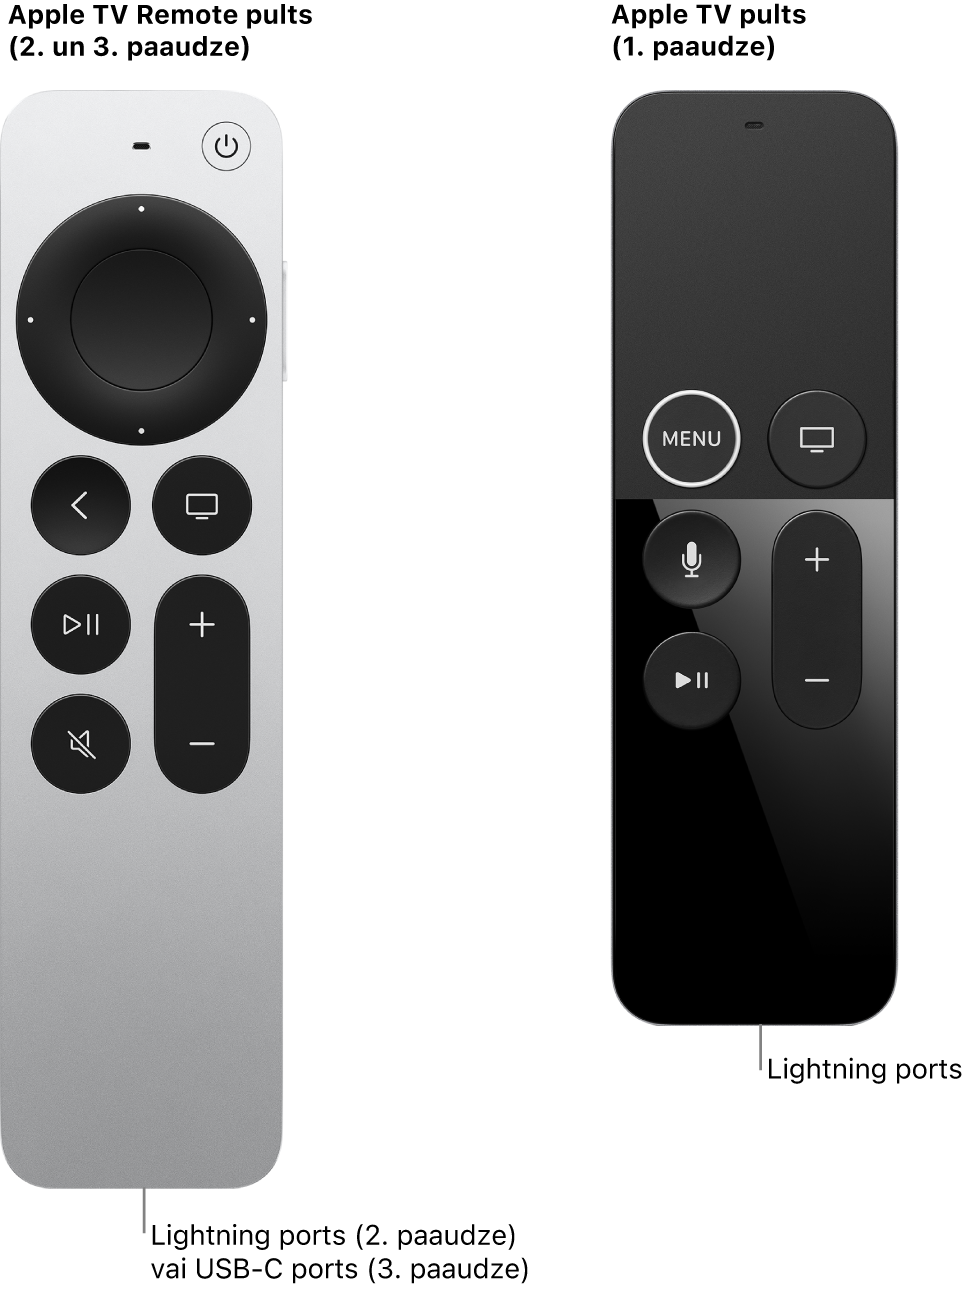 Apple TV Remote (2. paaudzes) un Apple TV Remote (1. paaudzes) pults ar parādītu Lightning portu